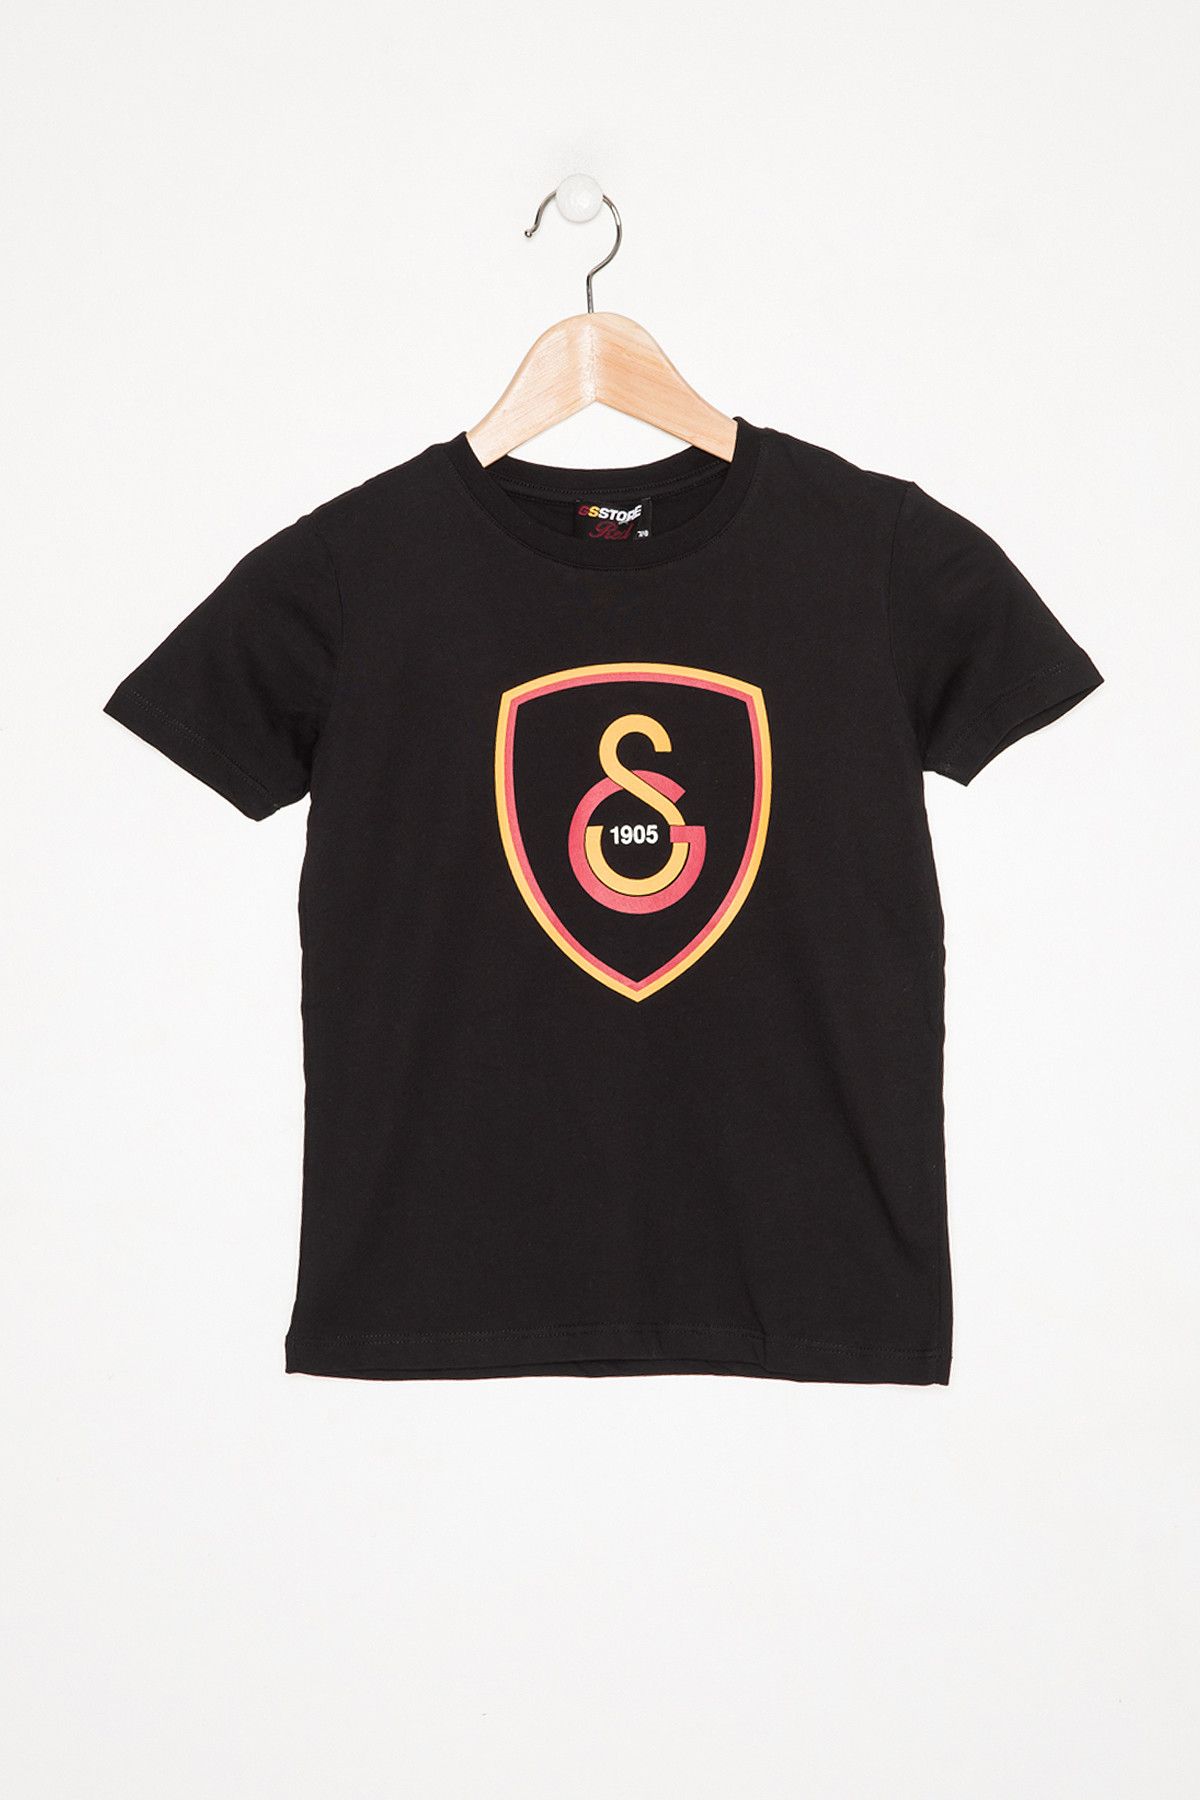 Galatasaray Galatasaray Siyah Çocuk T-Shirt K023-C85688